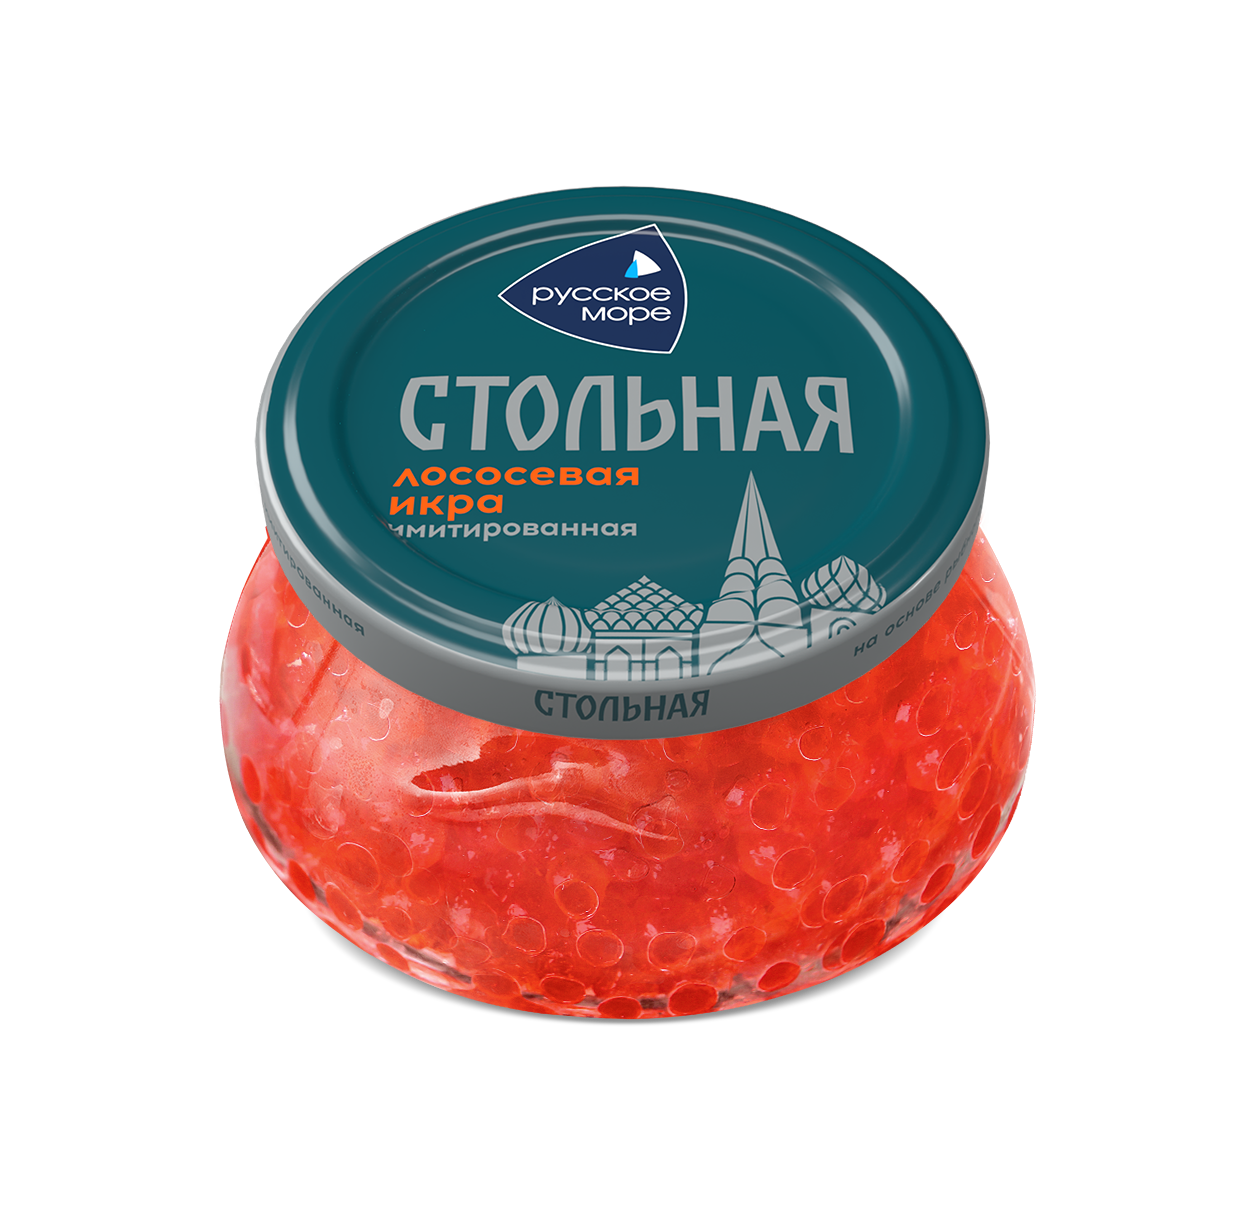 Икра лосося Русское Море Стольная имитированная 230 г - купить в ВкусВилл Гипермаркет - СберМаркет, цена на Мегамаркет